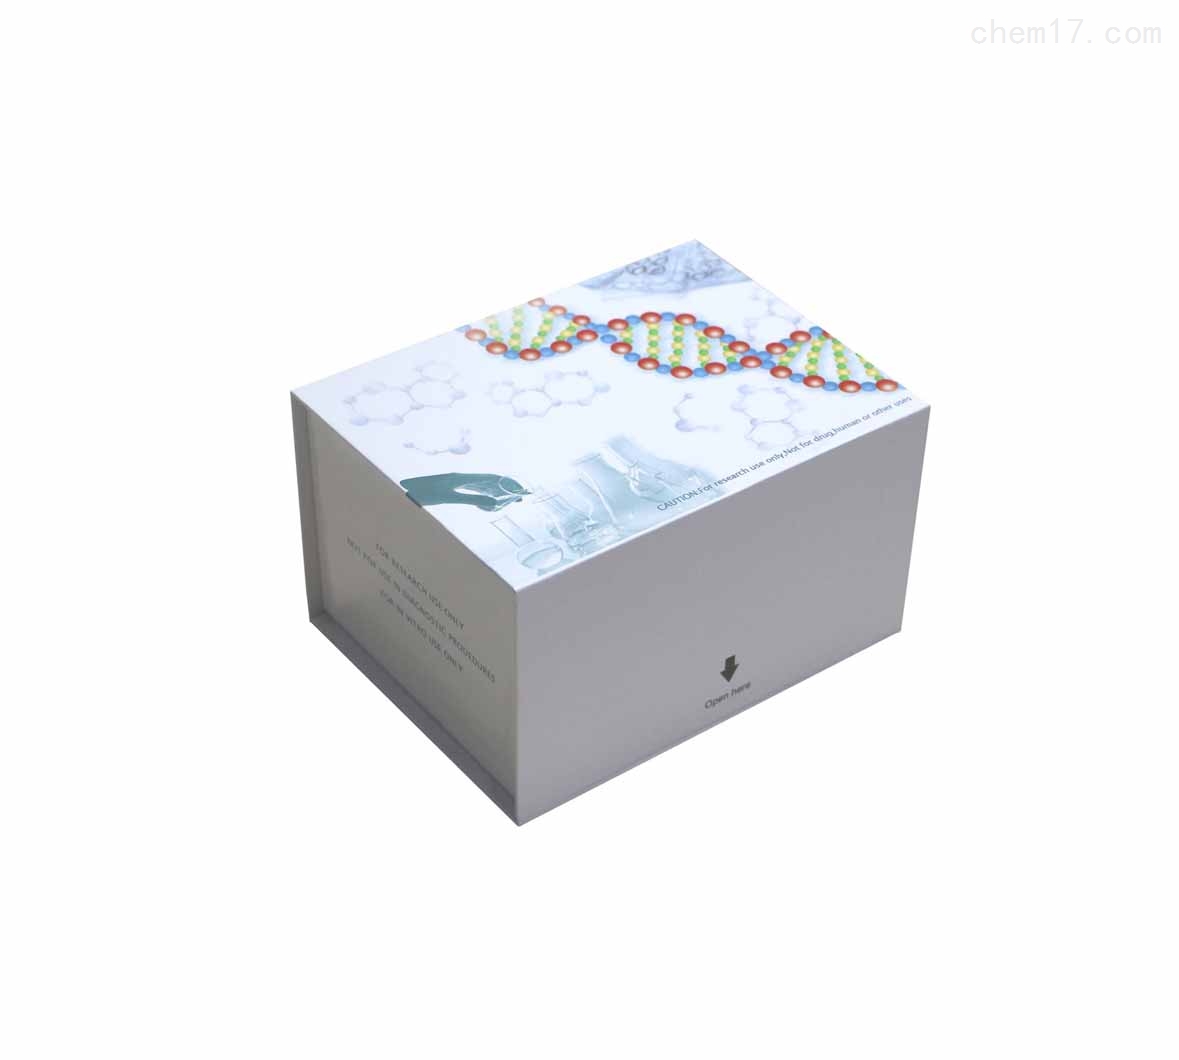 人食欲素受体(OXR)ELISA试剂盒检测灵敏